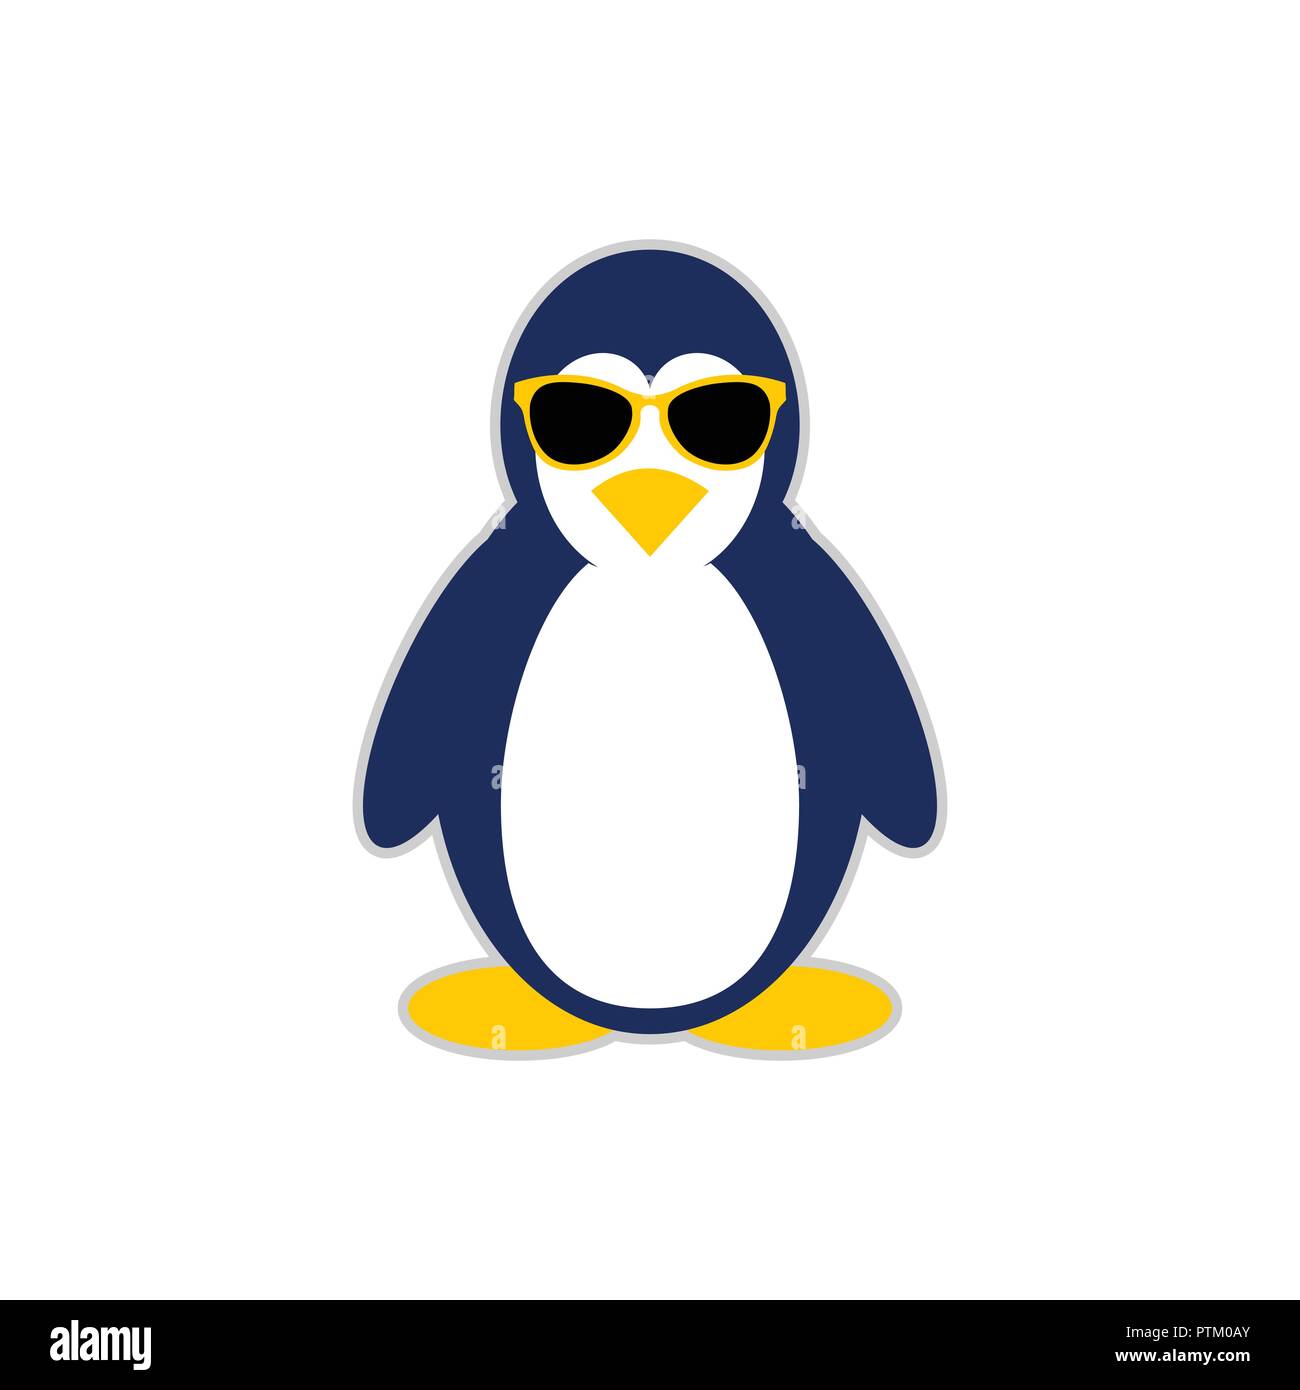 Cool pinguino mascotte di carattere simbolo Vector Graphic Logo Design Illustrazione Vettoriale